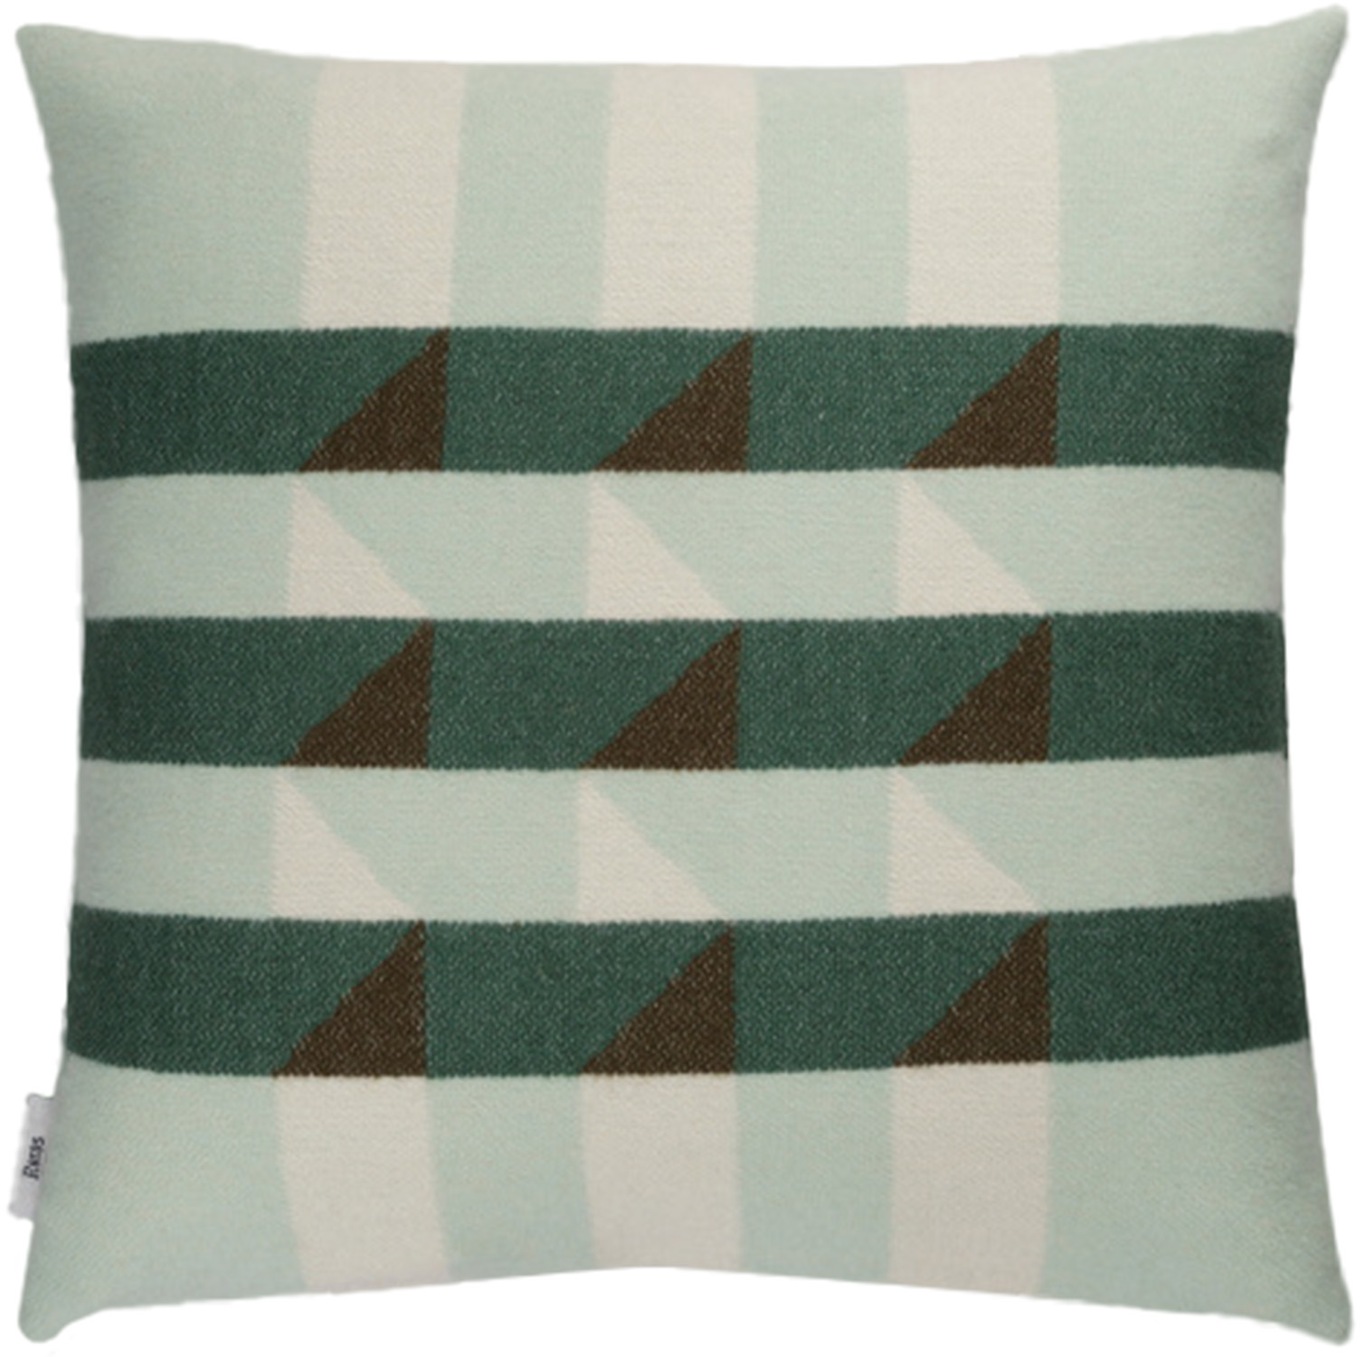 KVAM Cushion 50x50 cm, Green